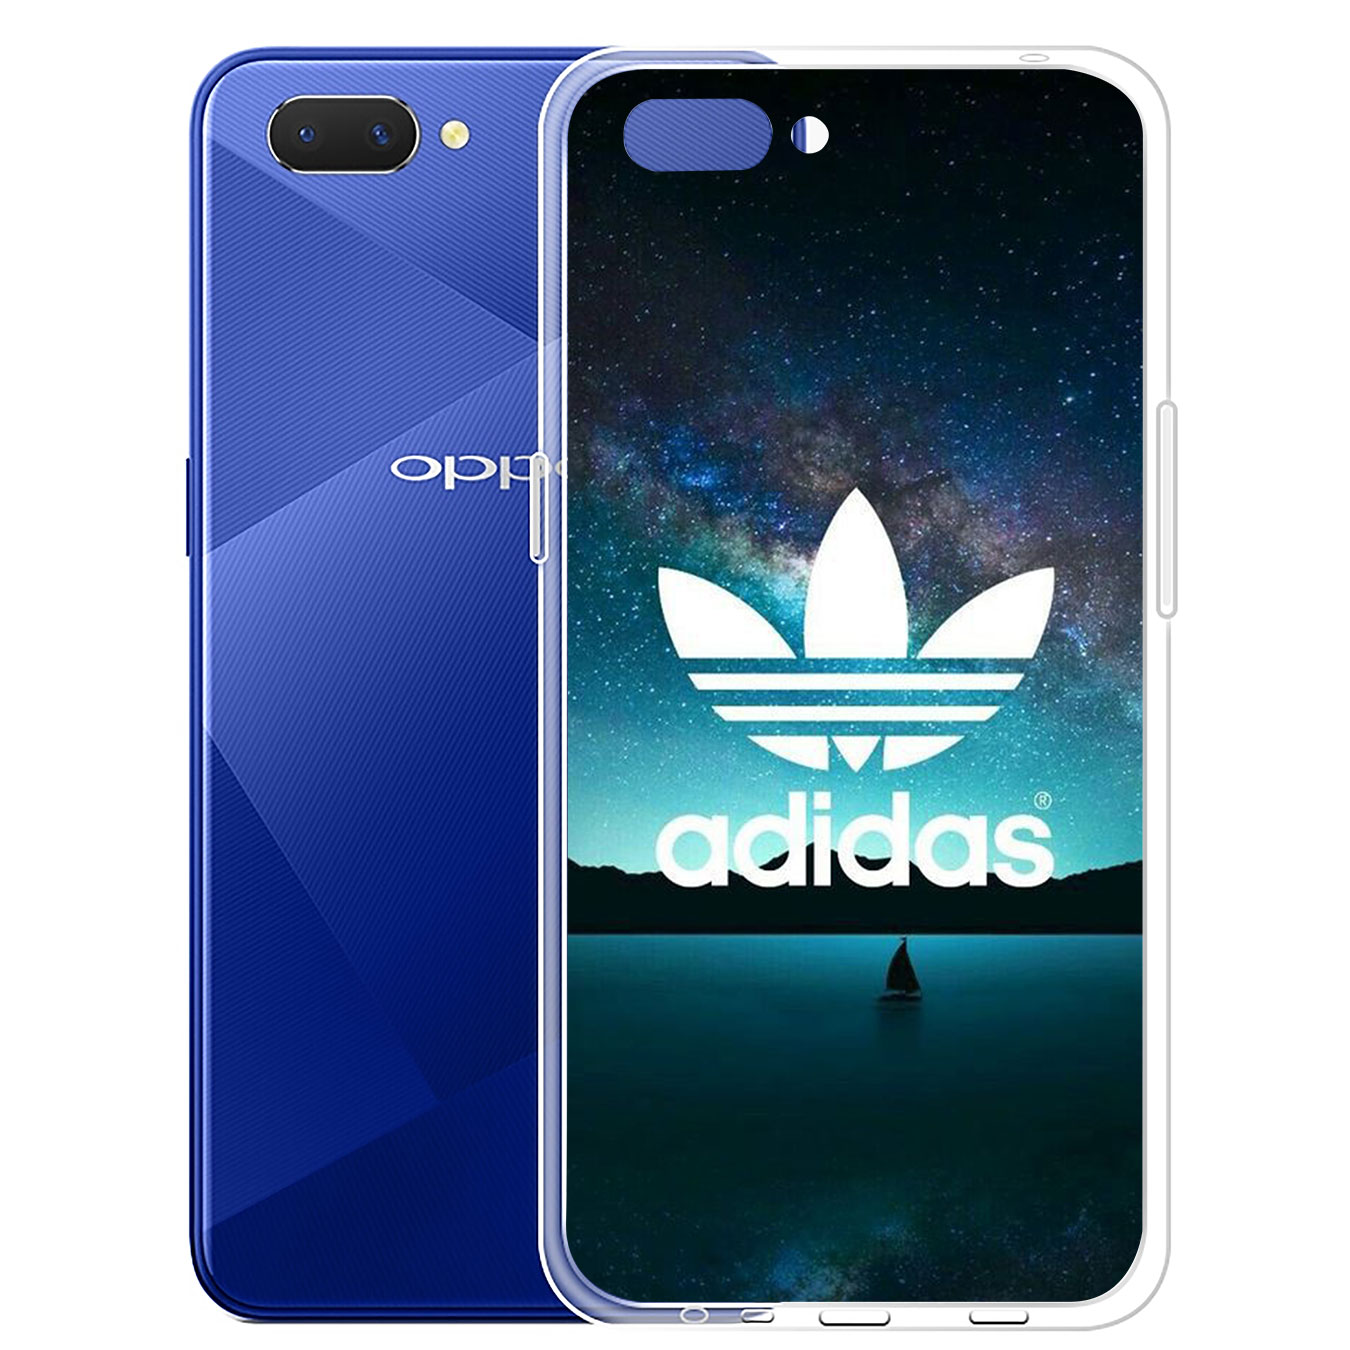 Ốp lưng silicone họa tiết logo Adidas cho Samsung Galaxy A71 A70 M20 A6 Plus A7 A8 A9 2018 A6+ S7 Edge